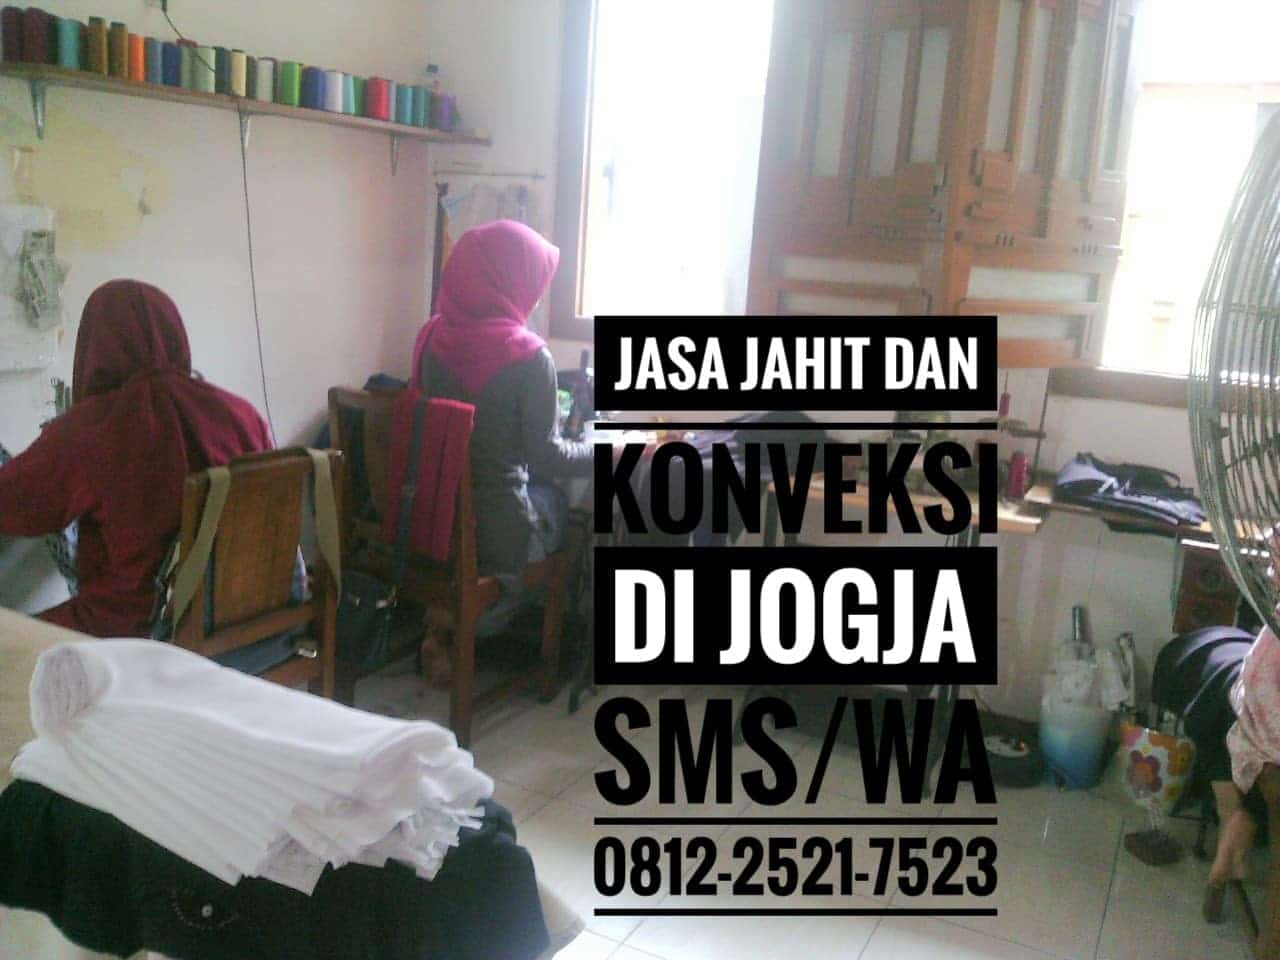 Jasa Jahit Jogja Kota Yogyakarta, Daerah Istimewa Yogyakarta